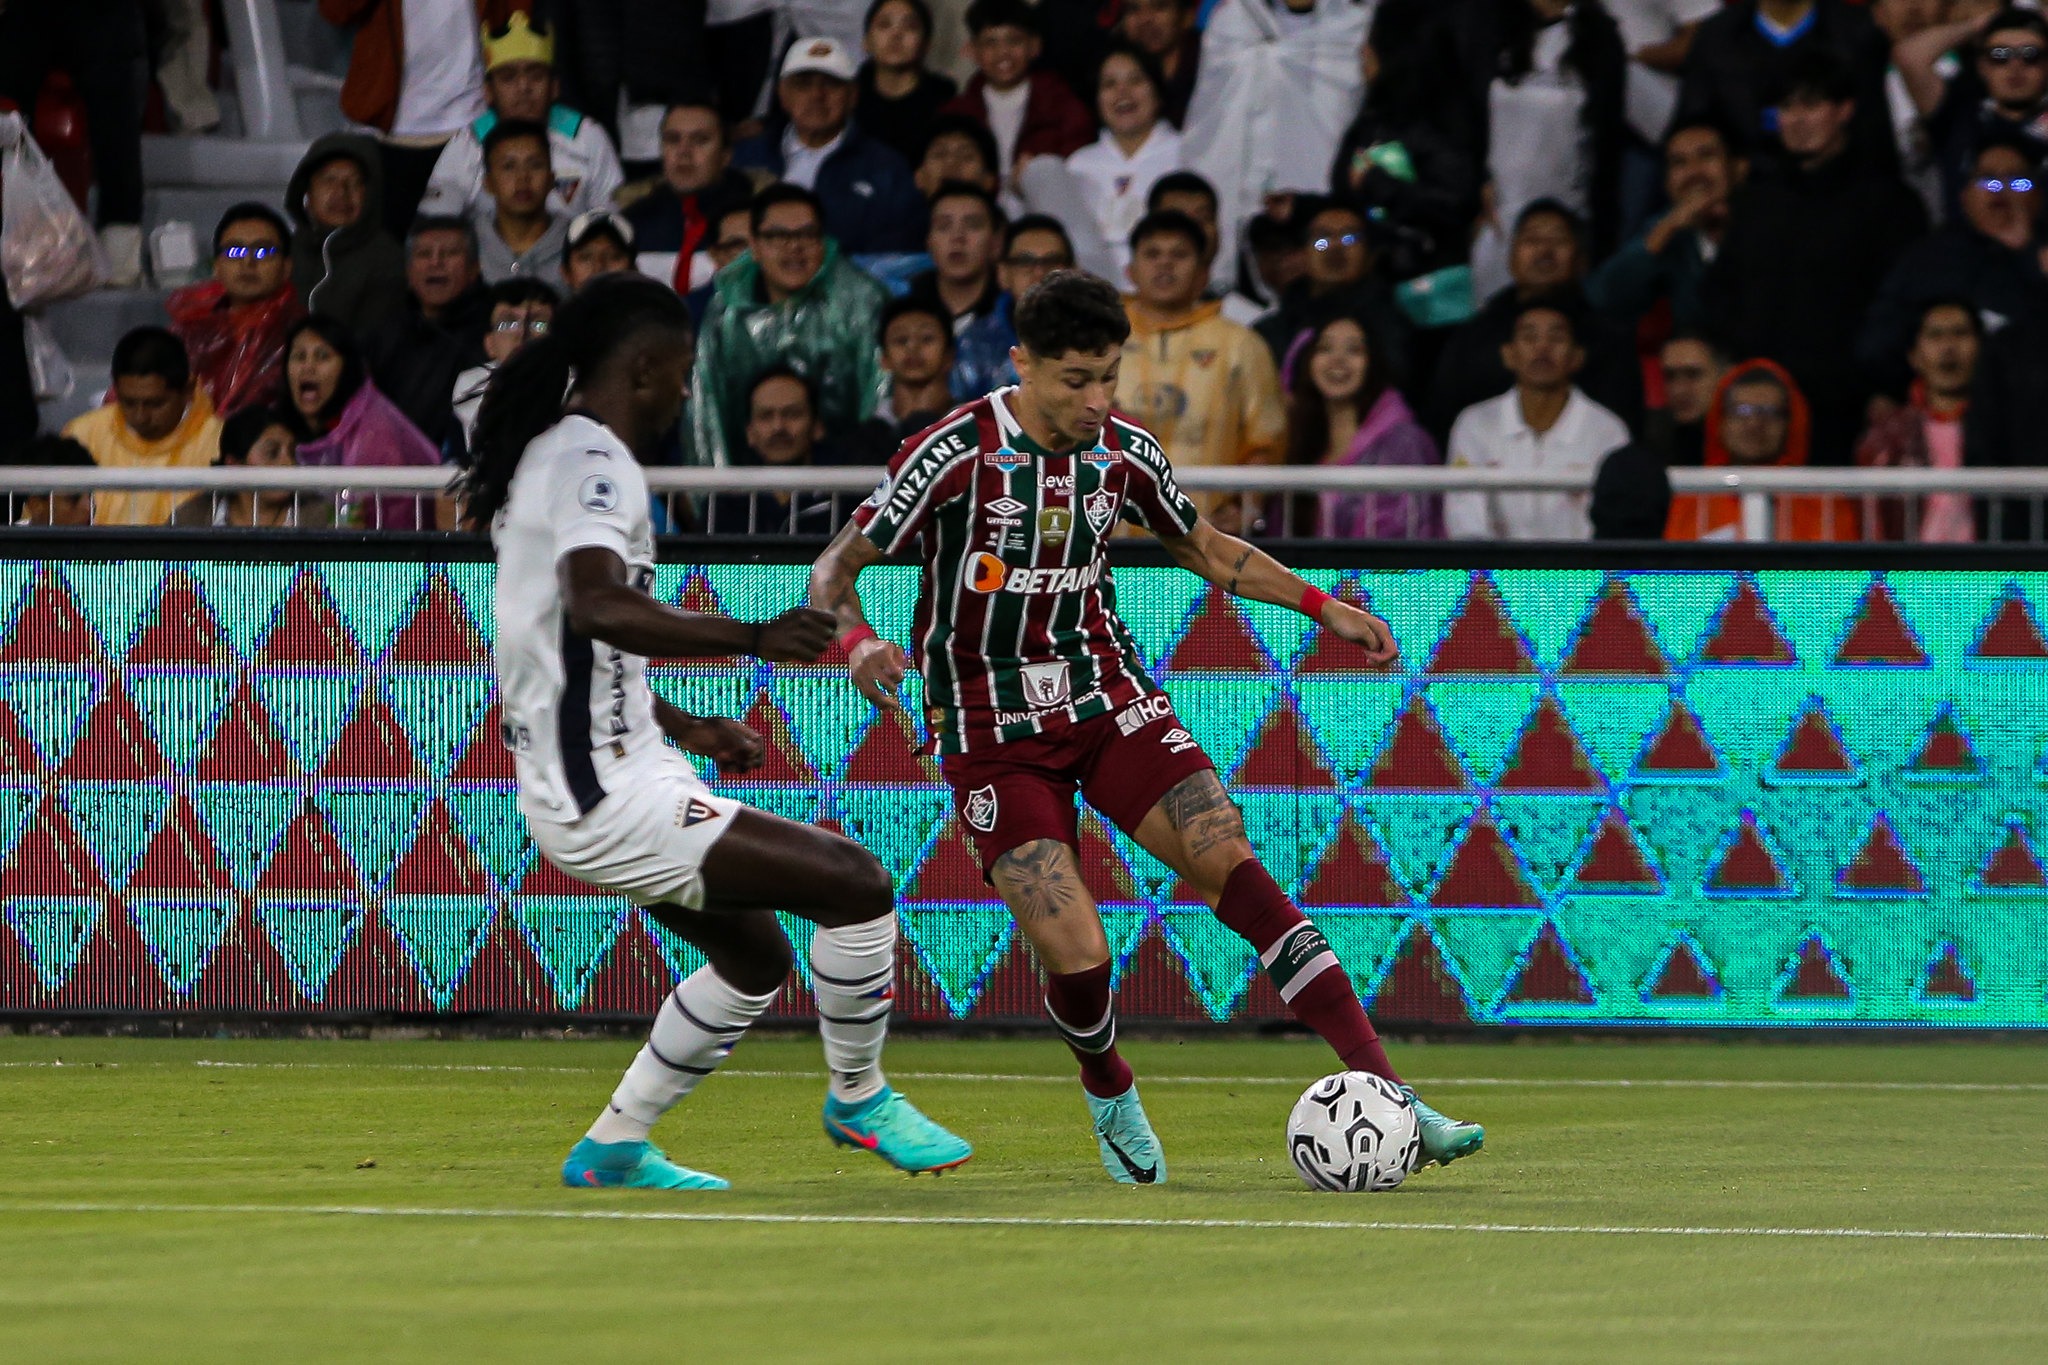 VÍDEO: Fluminense sucumbe a bombardeio da LDU no finzinho e larga atrás na Recopa, veja melhores momentos